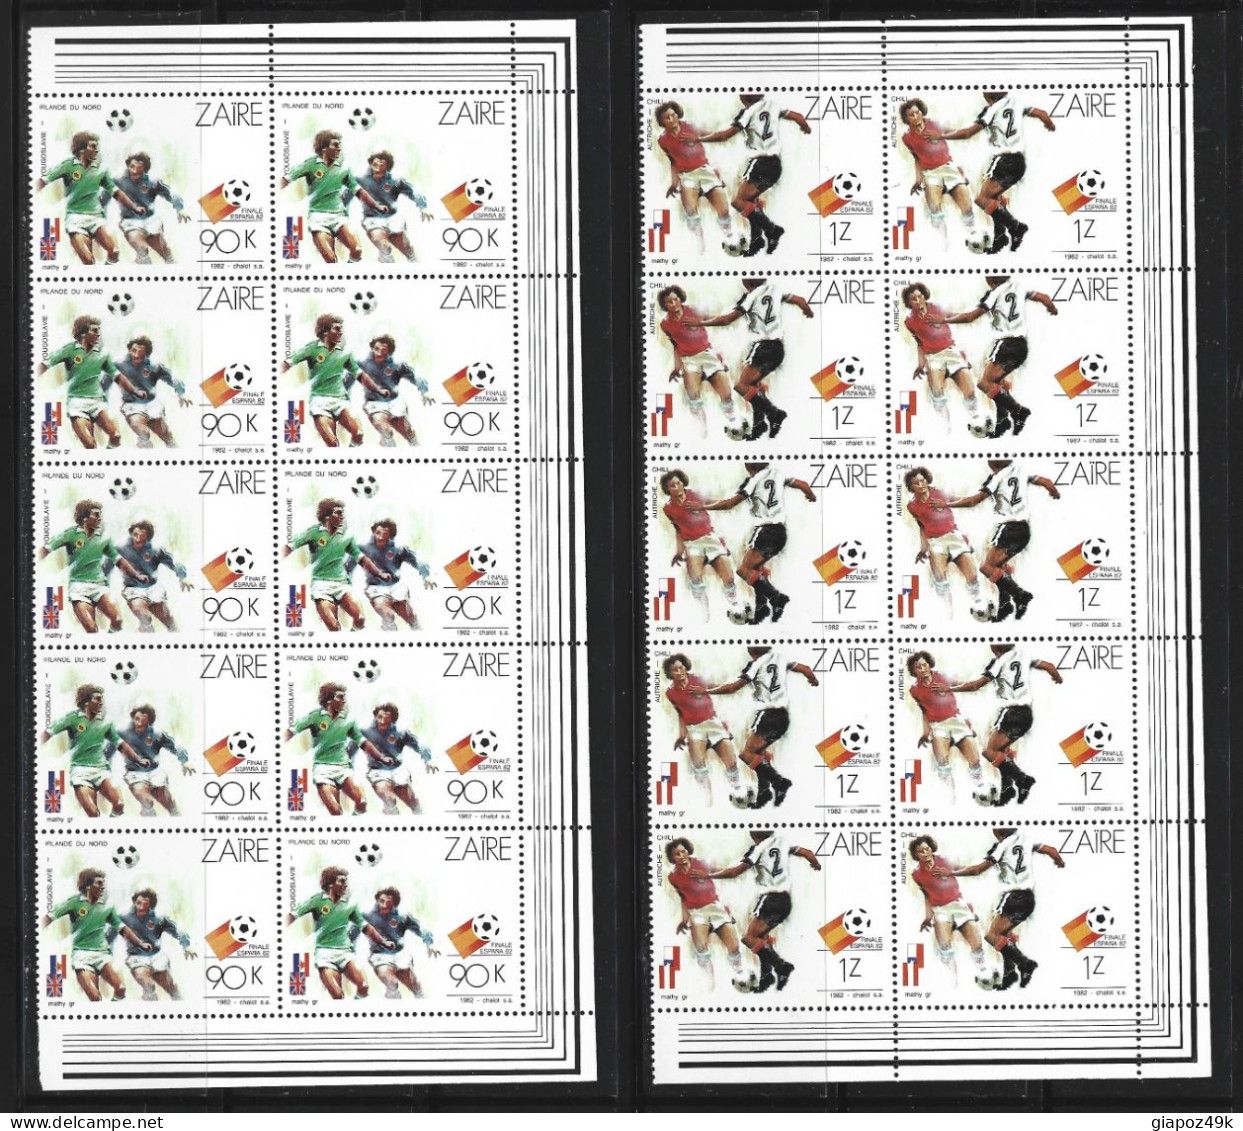 ● ZAIRE 1982 ֍ Calcio Espana '82 ● Soccer ● Blocco Di 10 ● Serie Completa ● Cat. 130,00 € ●Lotto N. XXX ● - Unused Stamps